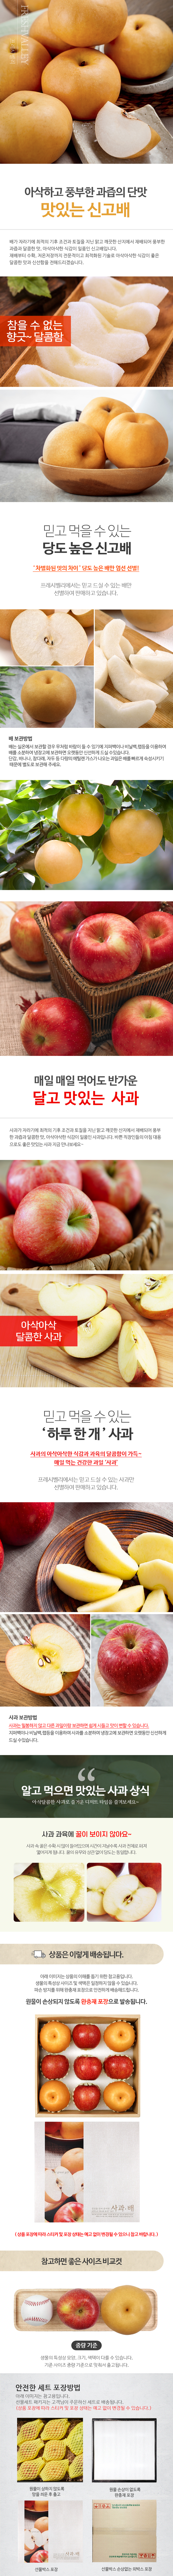 프리미엄 사과 배 혼합선물세트 4kg 내외 (사과 5과 + 배 4과)